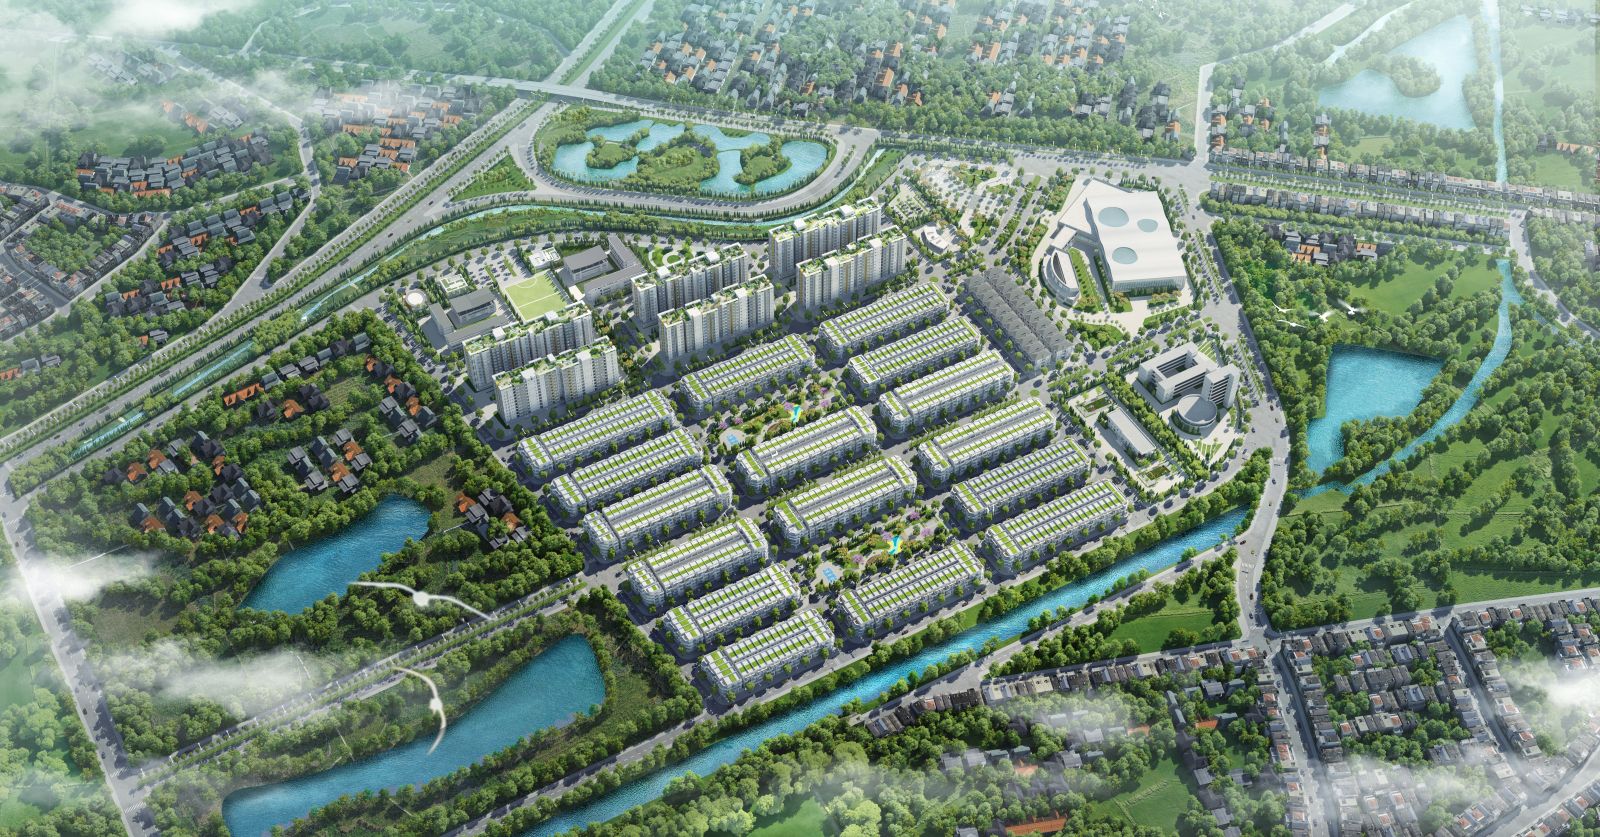 Him Lam Green Park như một thành phố thu nhỏ, đảm bảo đáp ứng đầy đủ nhu cầu của cư dân 